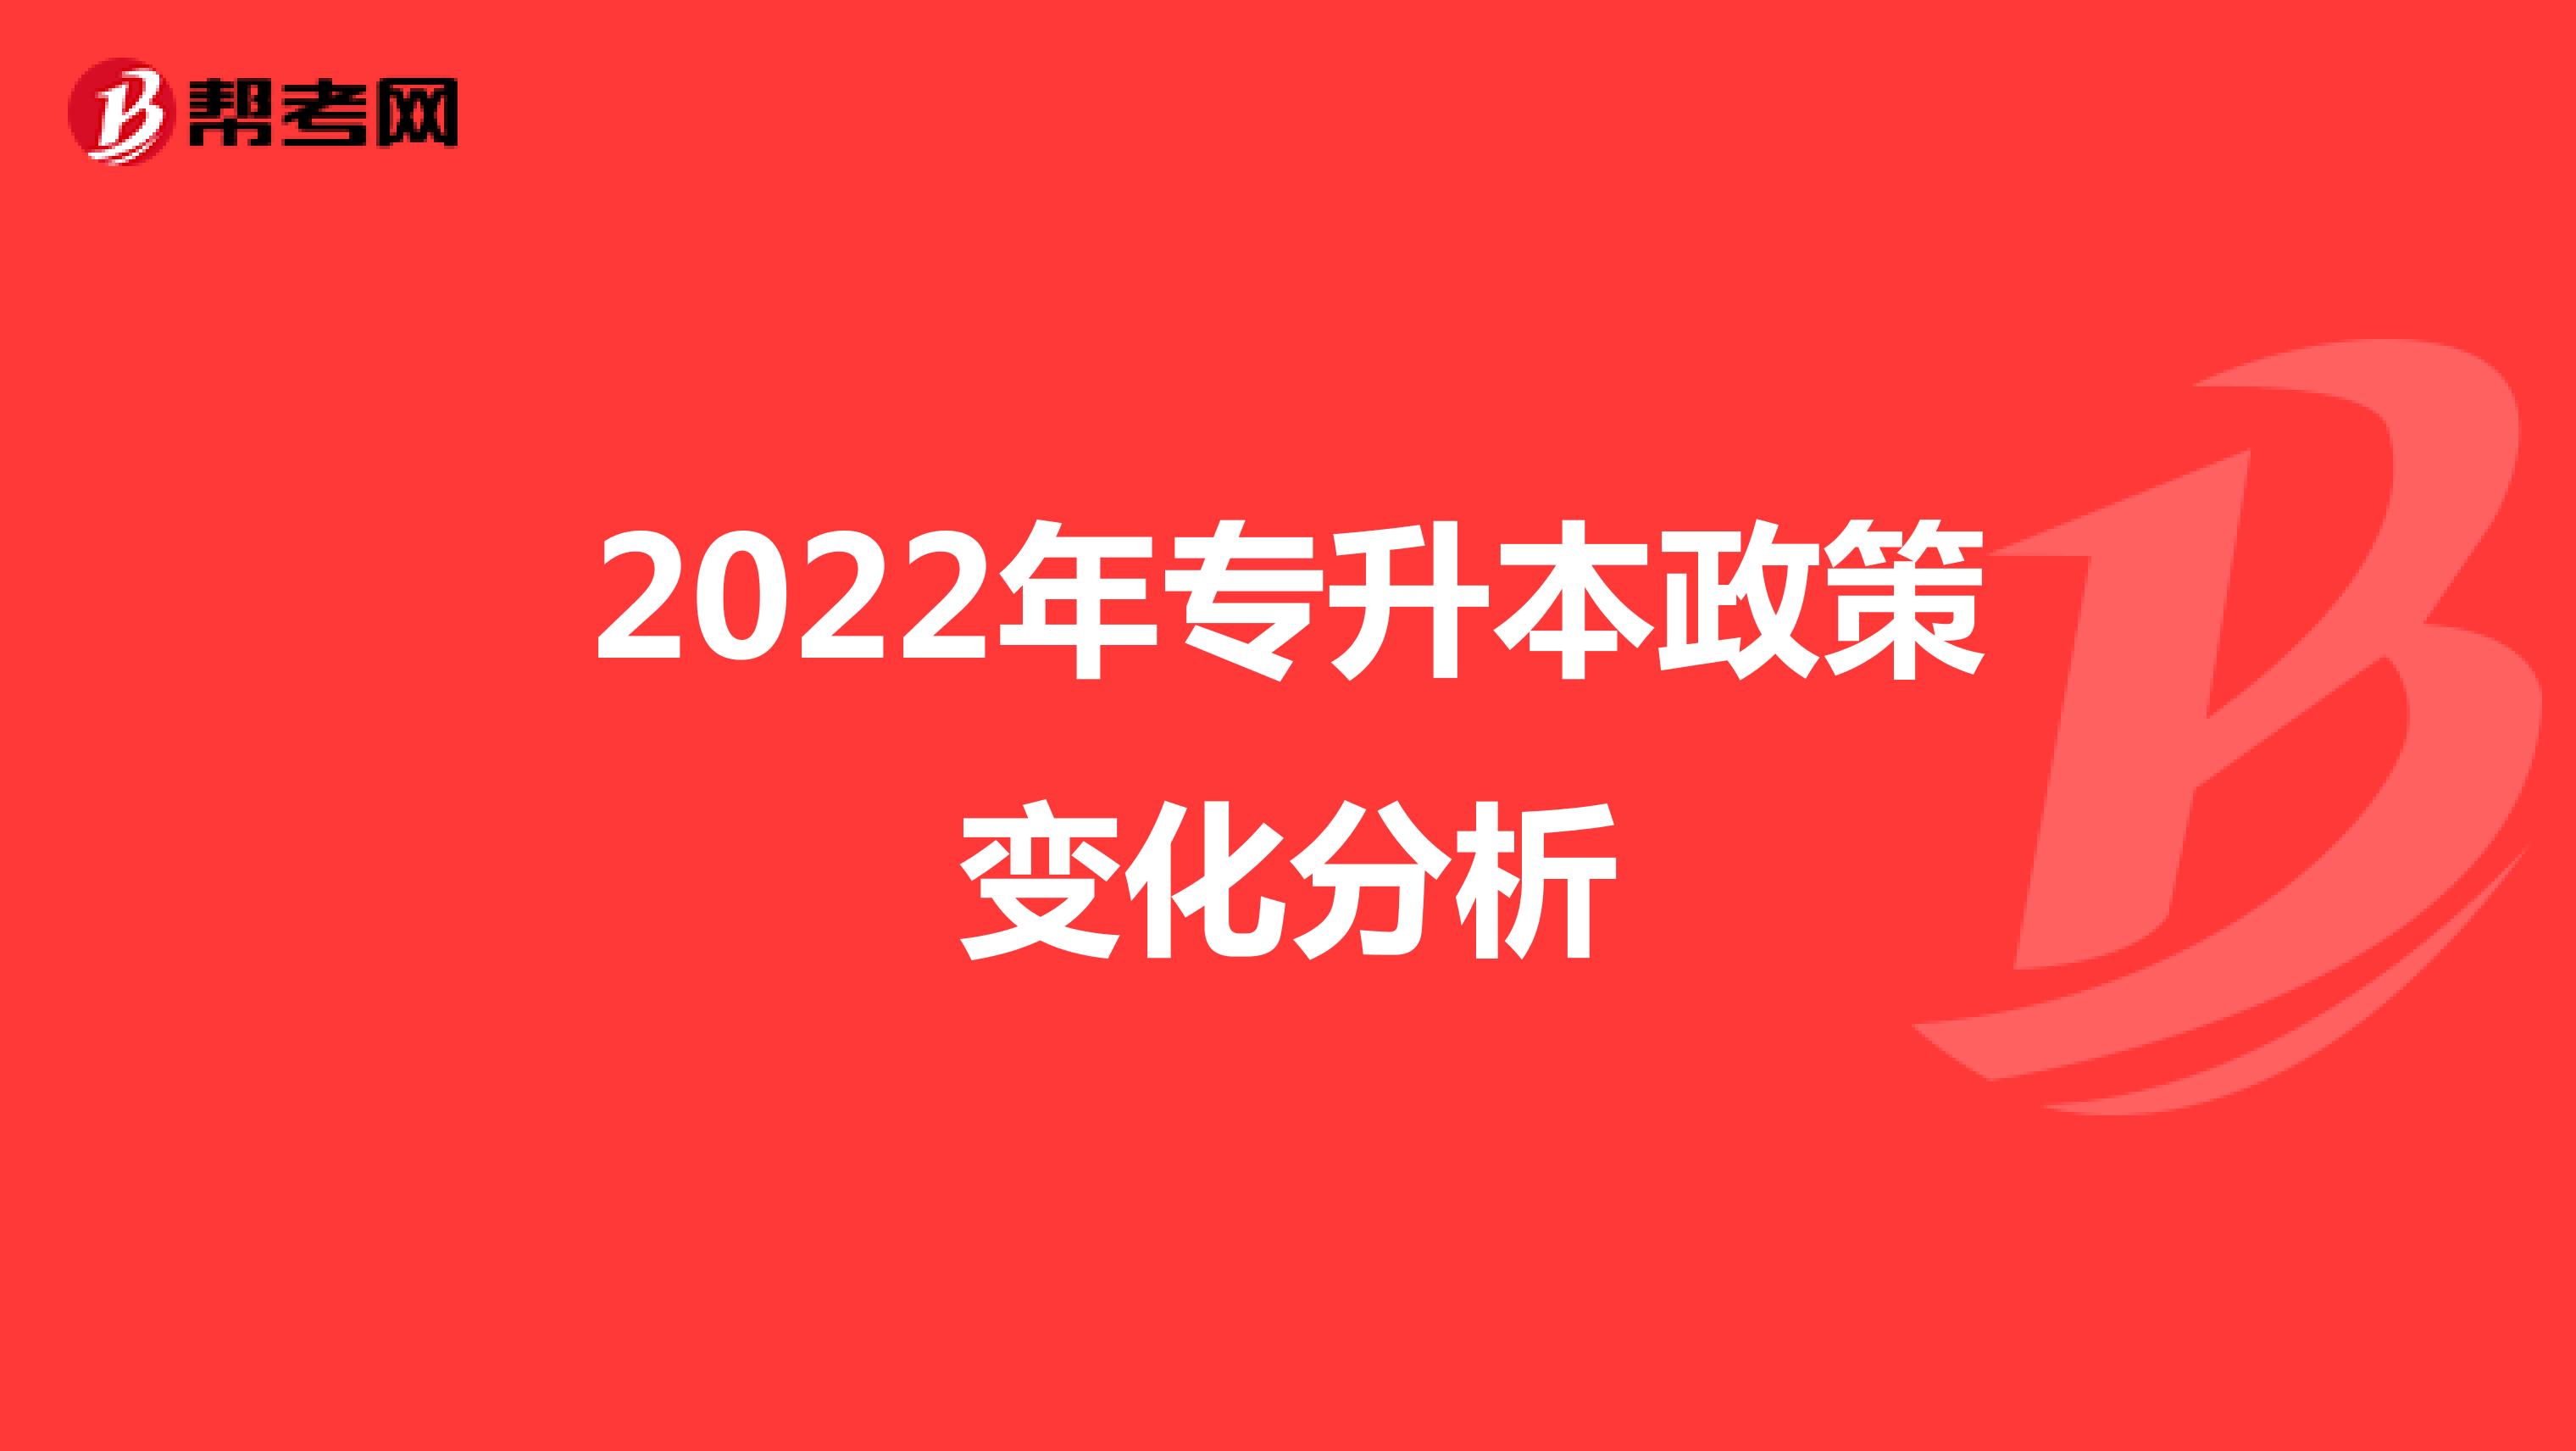 2022年专升本政策变化分析